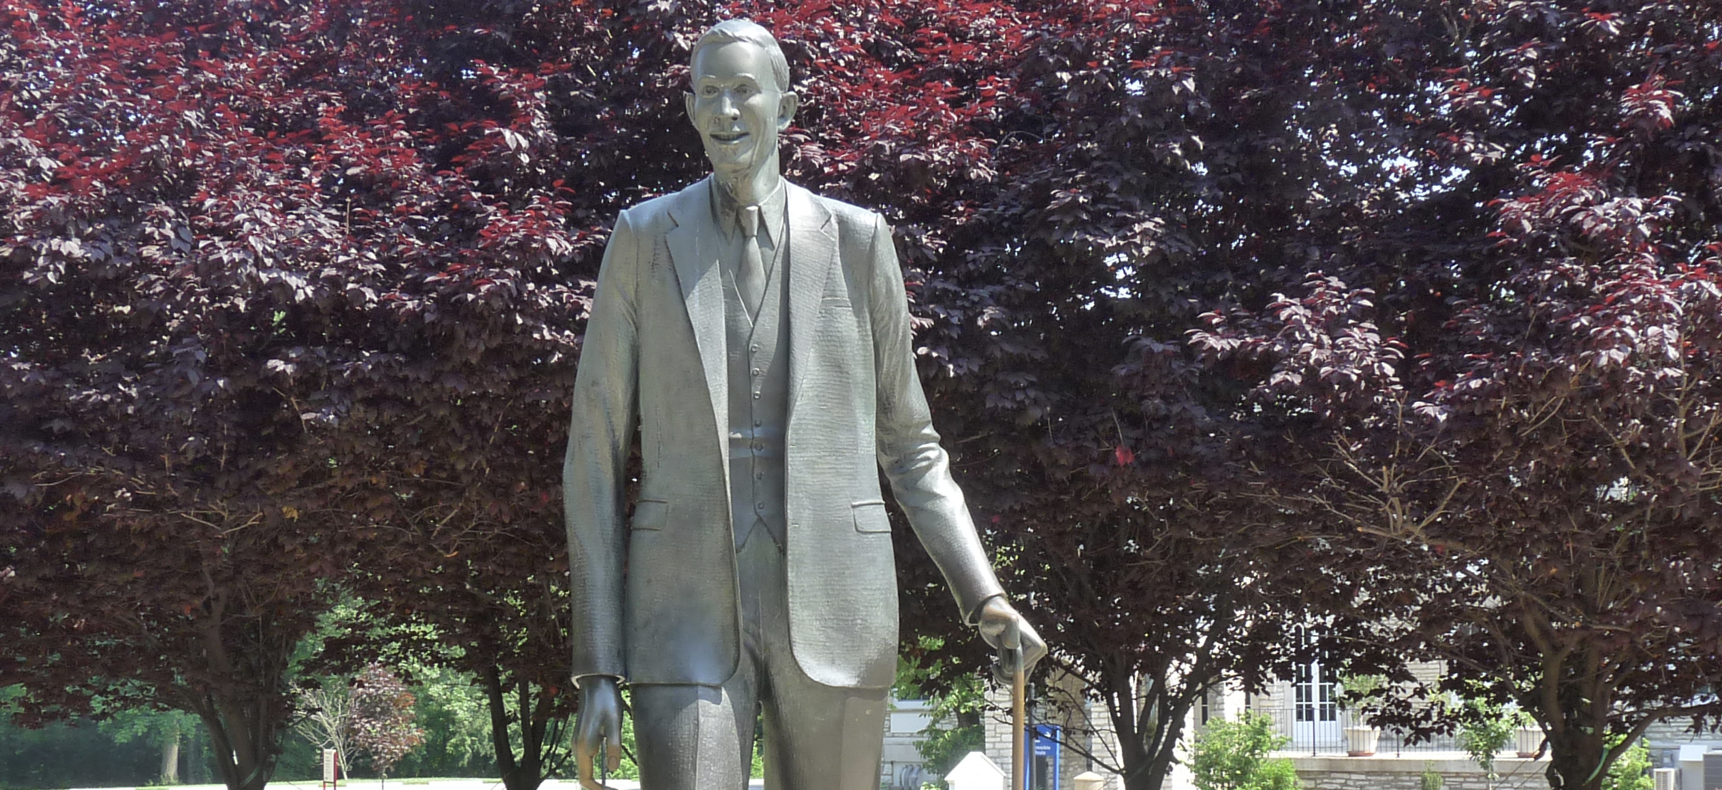 Robert Pershing Wadlow Statue